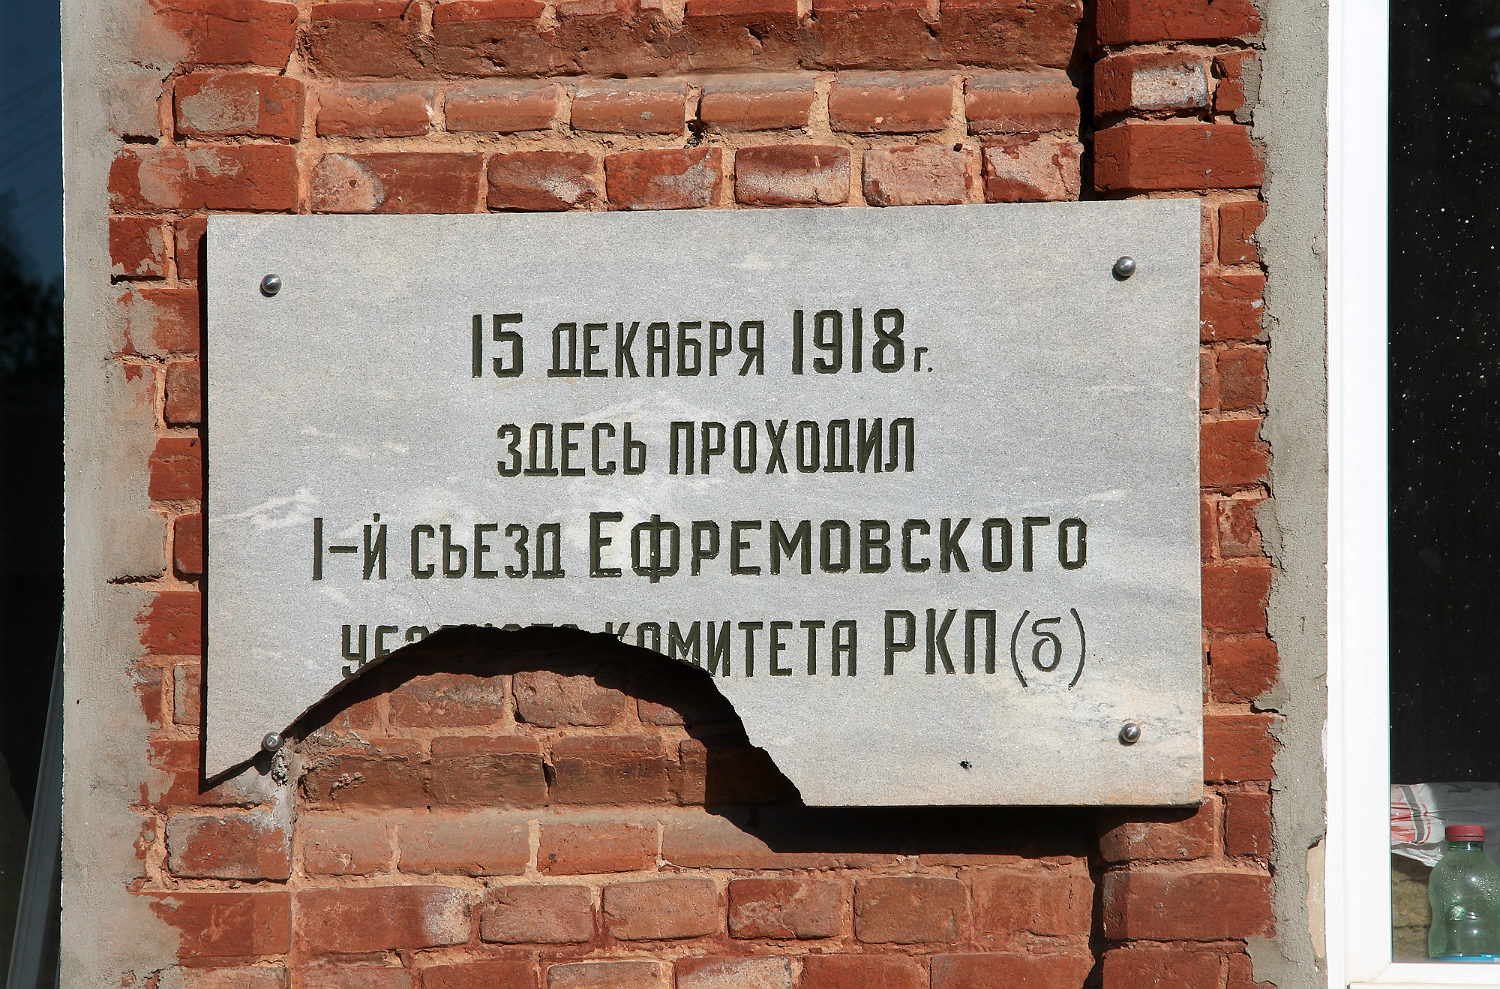 Jefriemow, Улица Карла Маркса, 46. Jefriemow — Memorial plaques